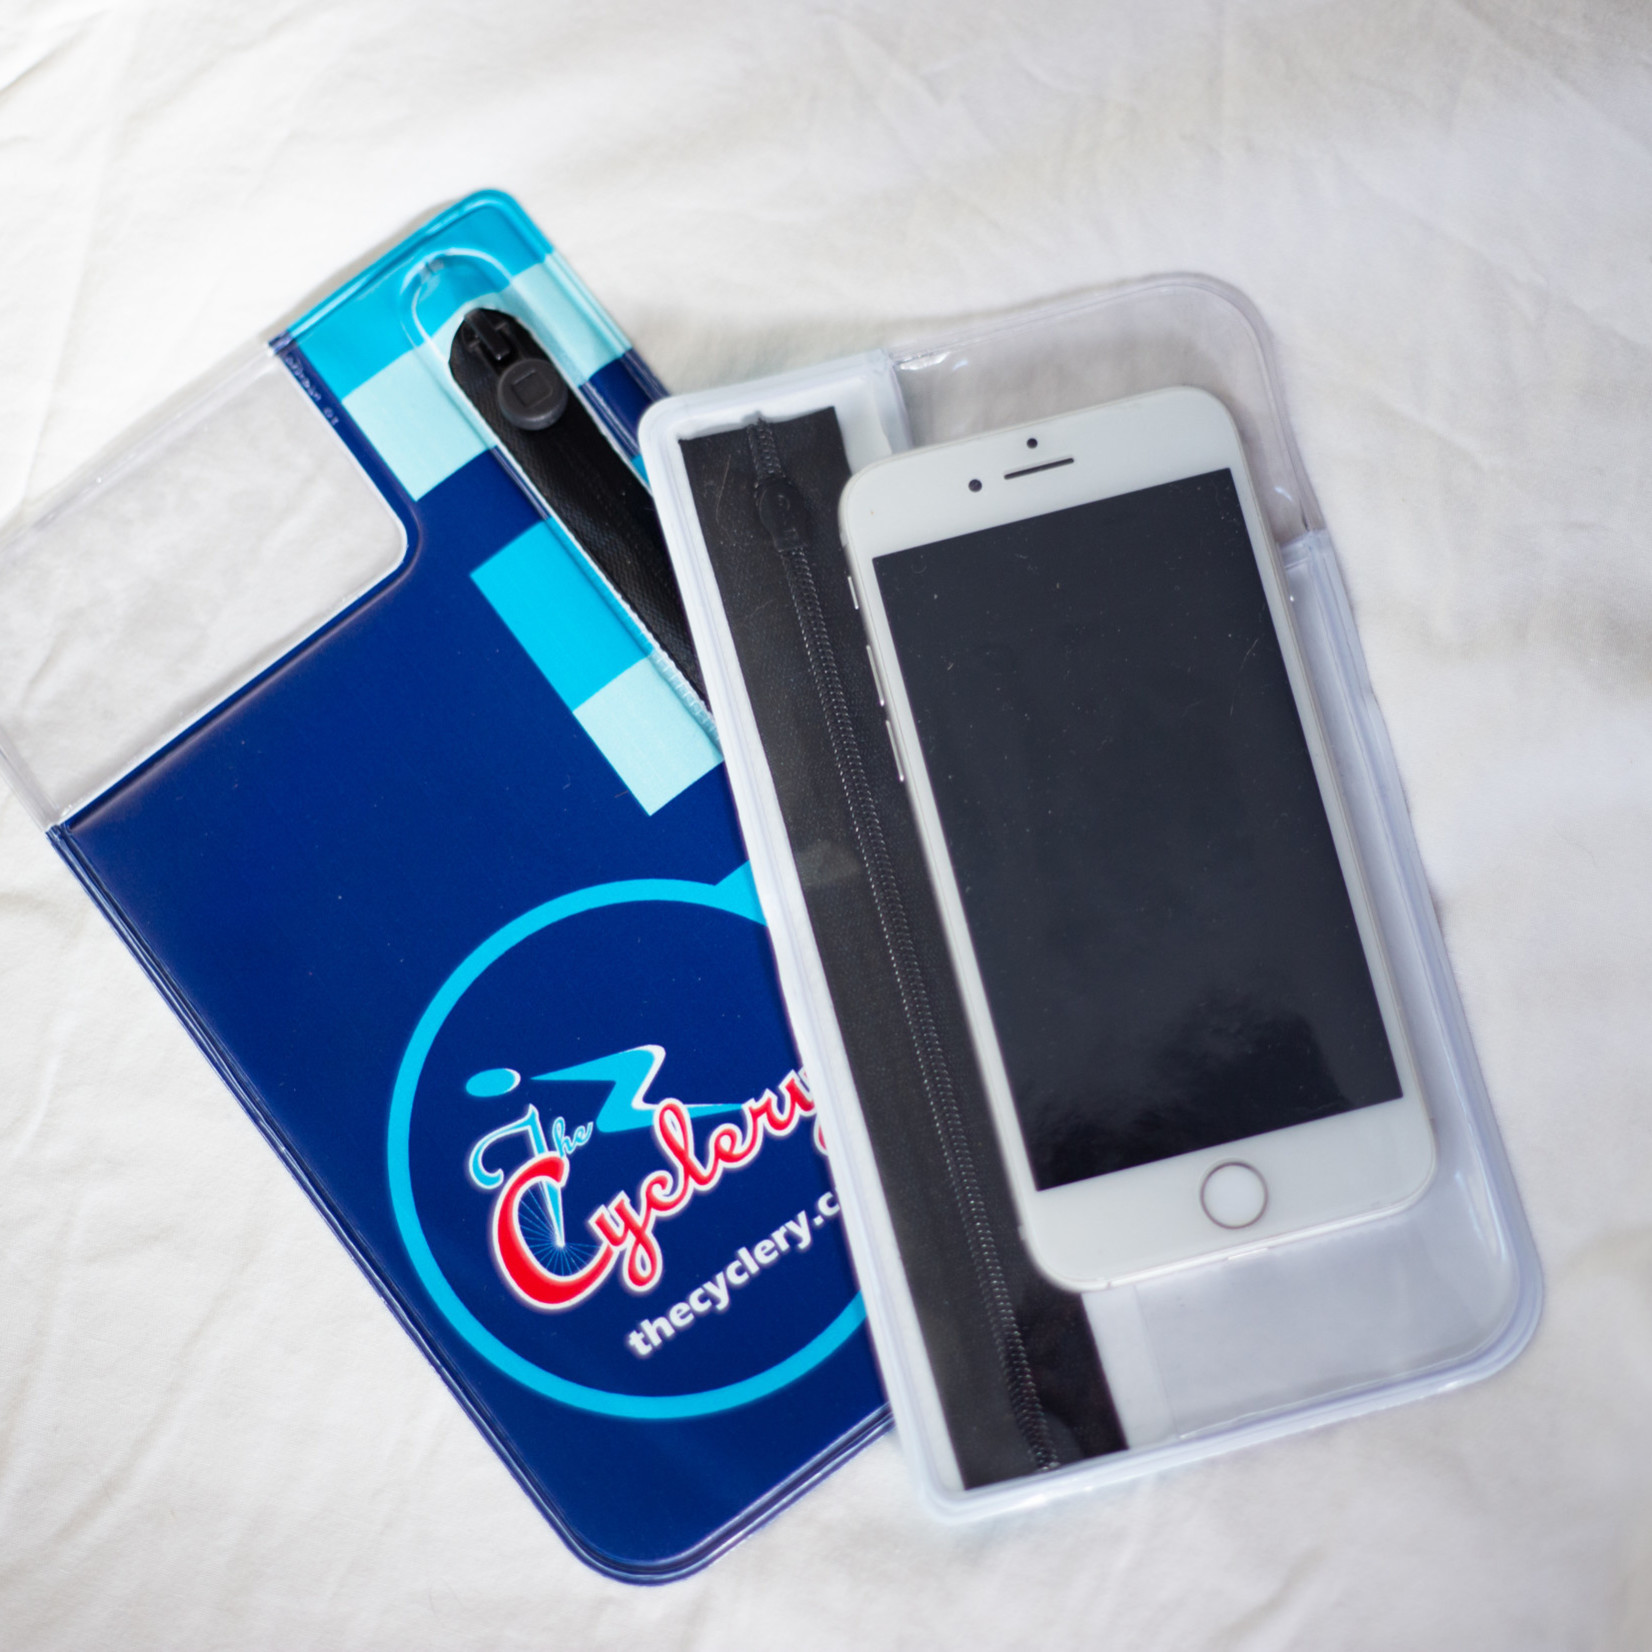 Pocpac Pocpac, Utility 2 Phone Case, 101 x 205 mm